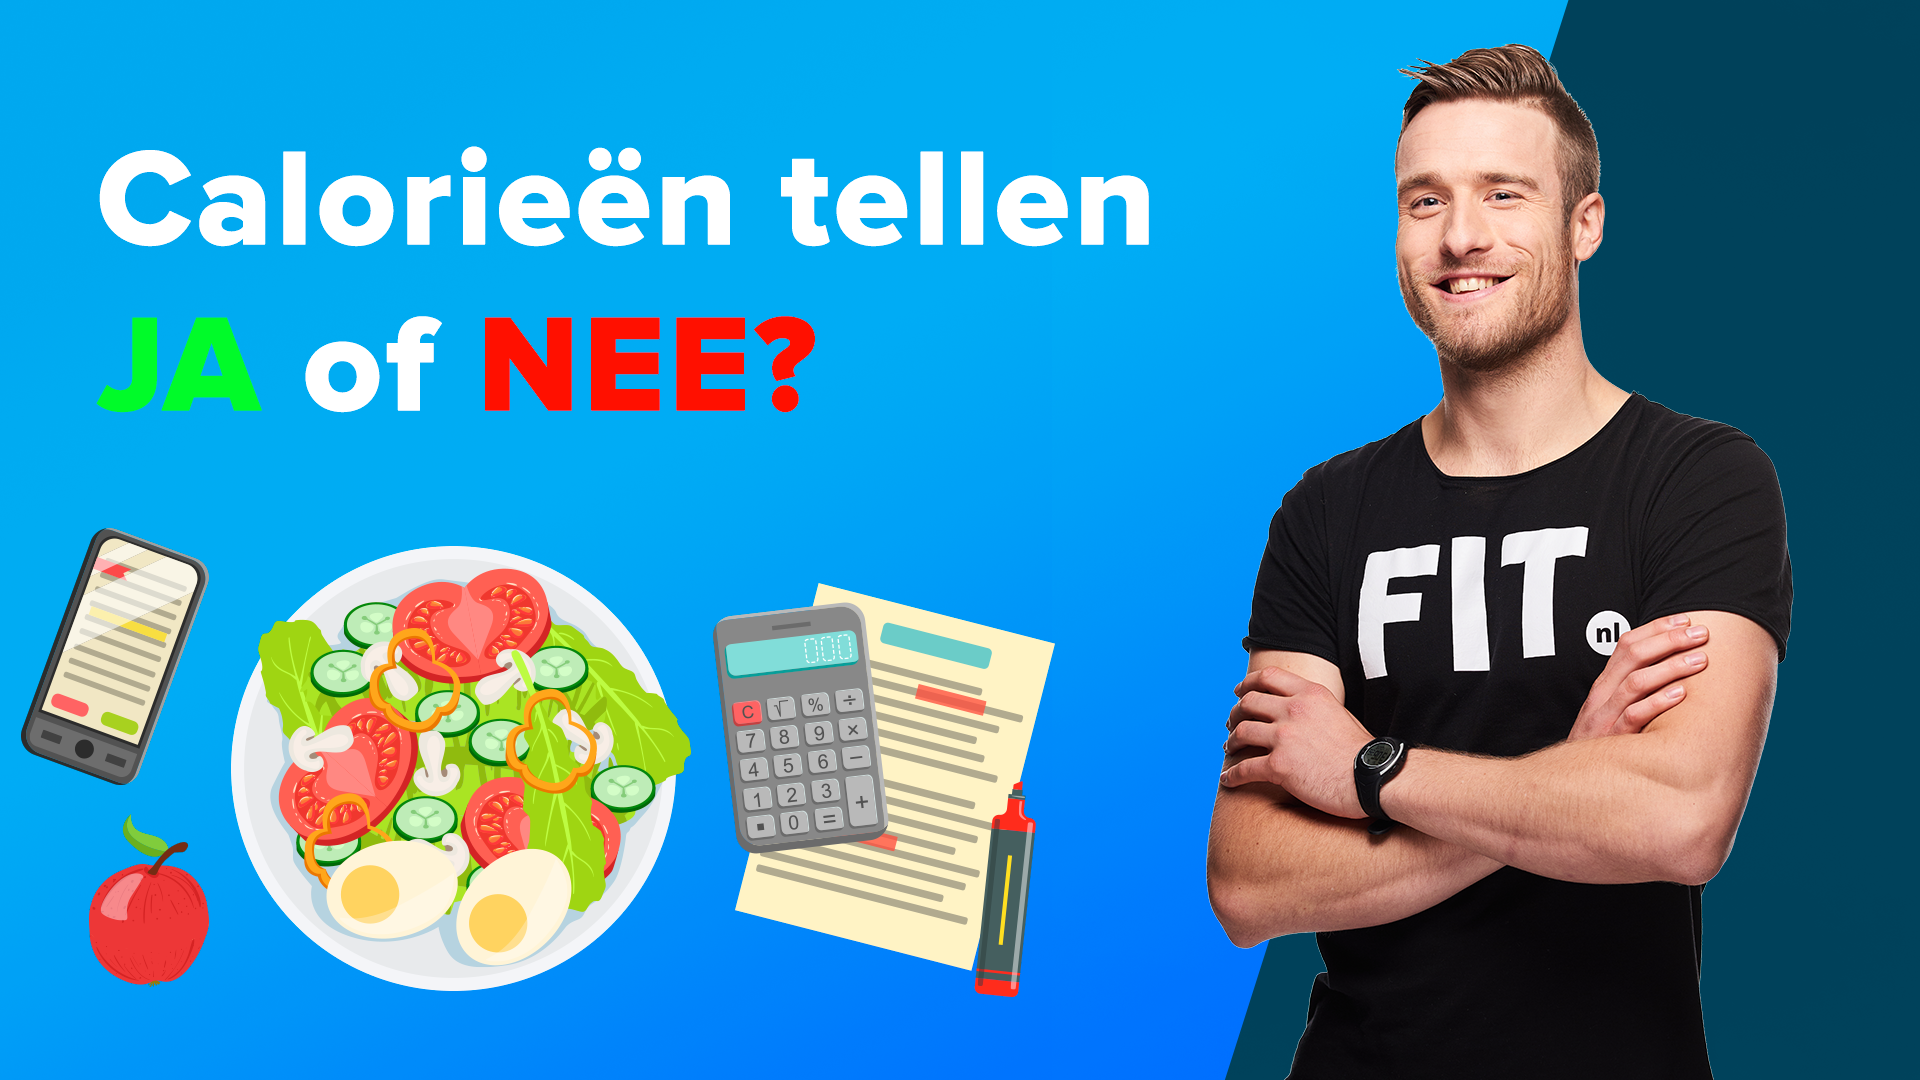 Identificeren Communistisch Rationeel Calorieën tellen: wat zijn de voor- en nadelen? | FIT.nl